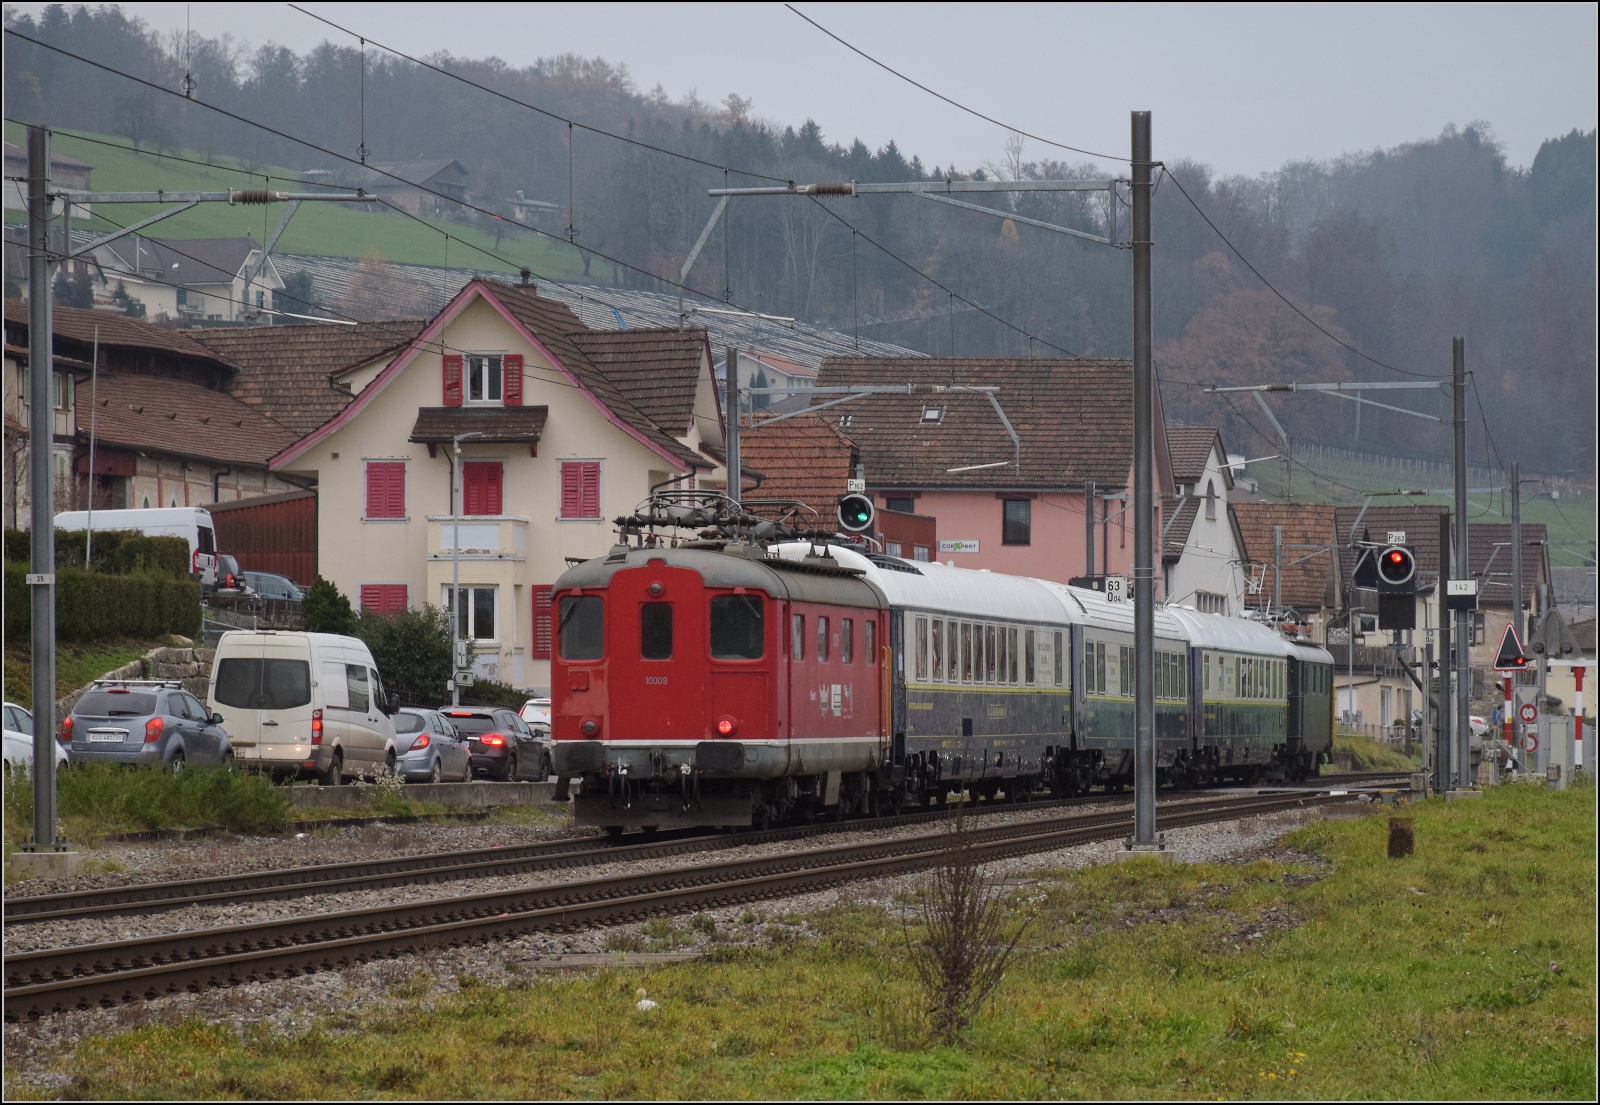 Im Stile des Orientexpress.

In Wauwil ist es gar nicht so einfach, einen Ausschnitt ohne moderne Klötzchenbebauung zu finden. Das letzte Bild zeigt den dahinziehenden Zug mit Re 4/4 I 10009 am Zugschluss. Damit endet die Serie. November 2022.